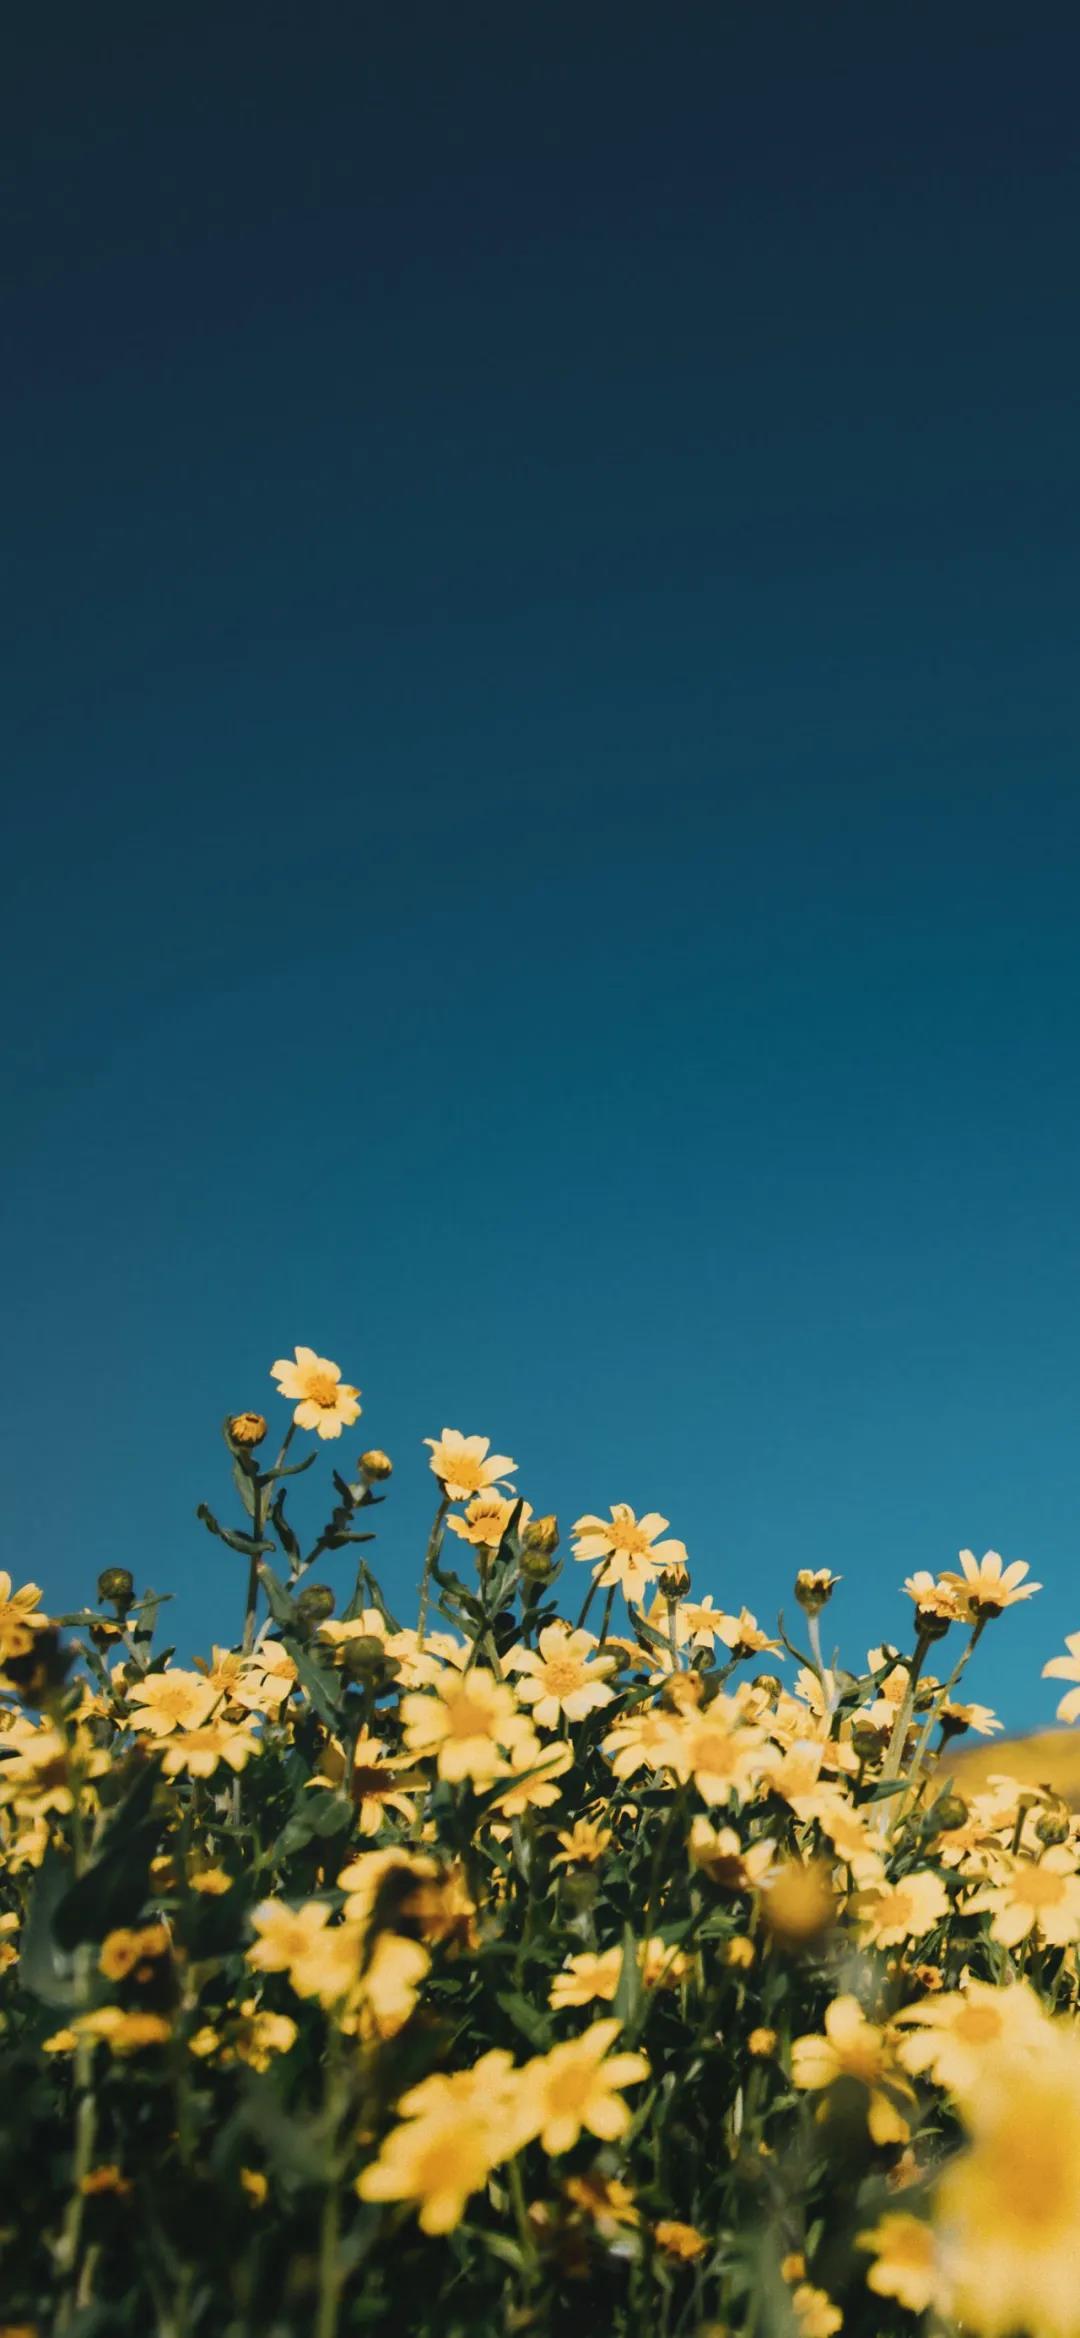 对着蓝色天空的花朵绿叶唯美清新手机壁纸图片